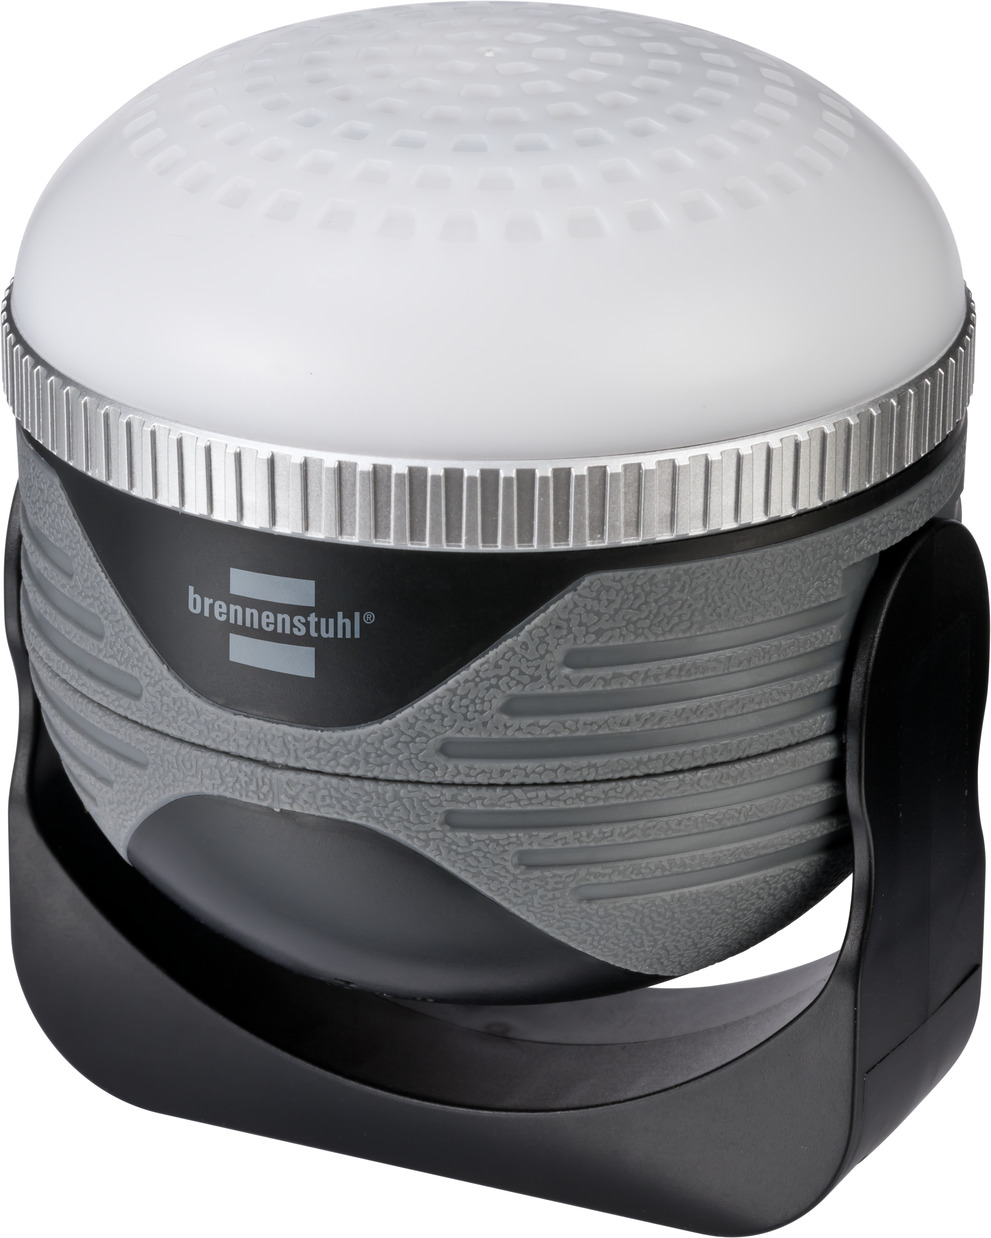 LED Akku | Bluetooth AB mit 350lm OLI IP44 brennenstuhl® Lautsprecher 310 Outdoor Leuchte